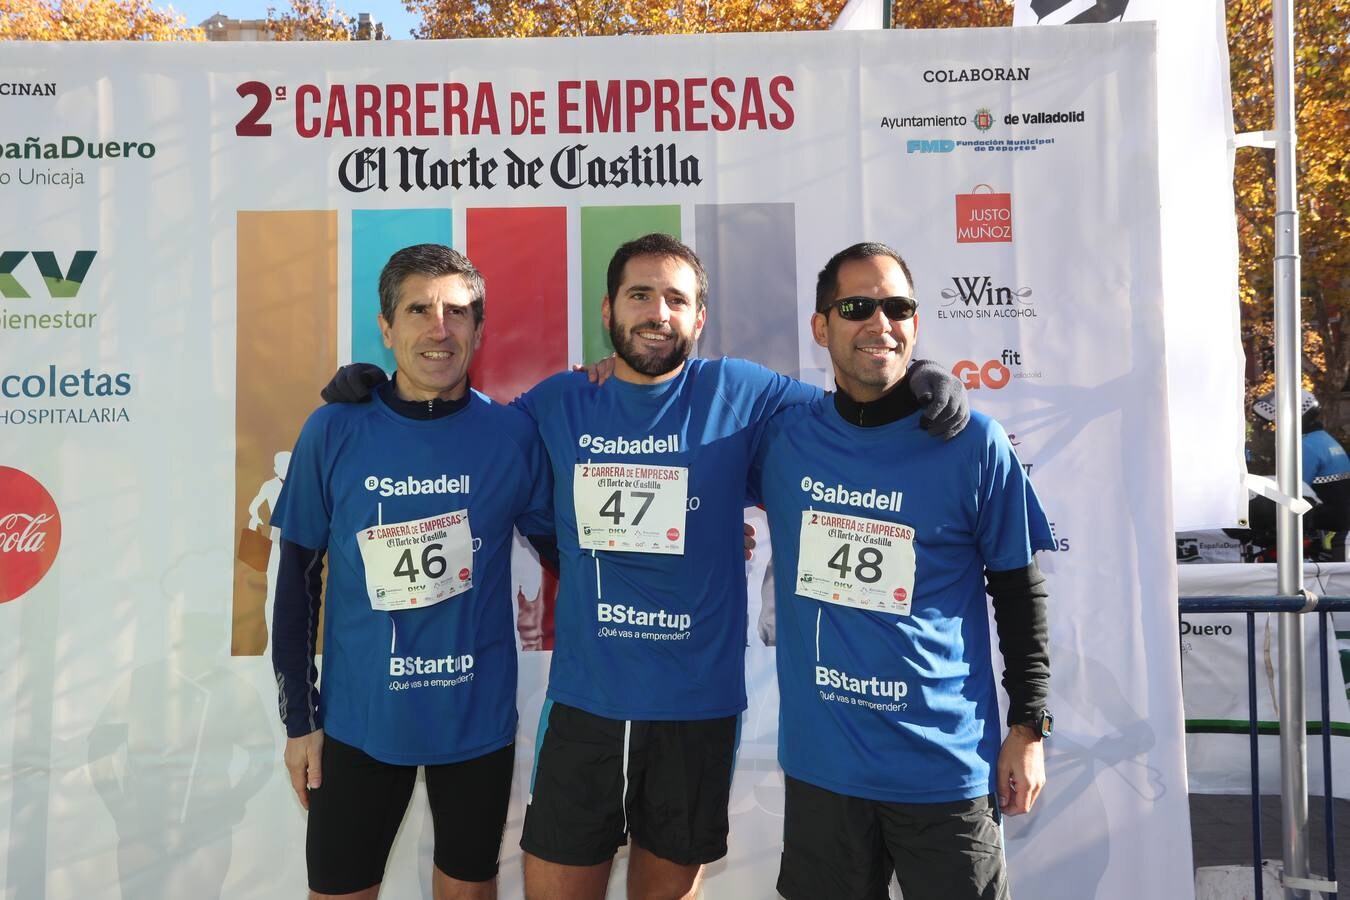 Photocall y salida de la II Carrera de Empresas de El Norte de Castilla